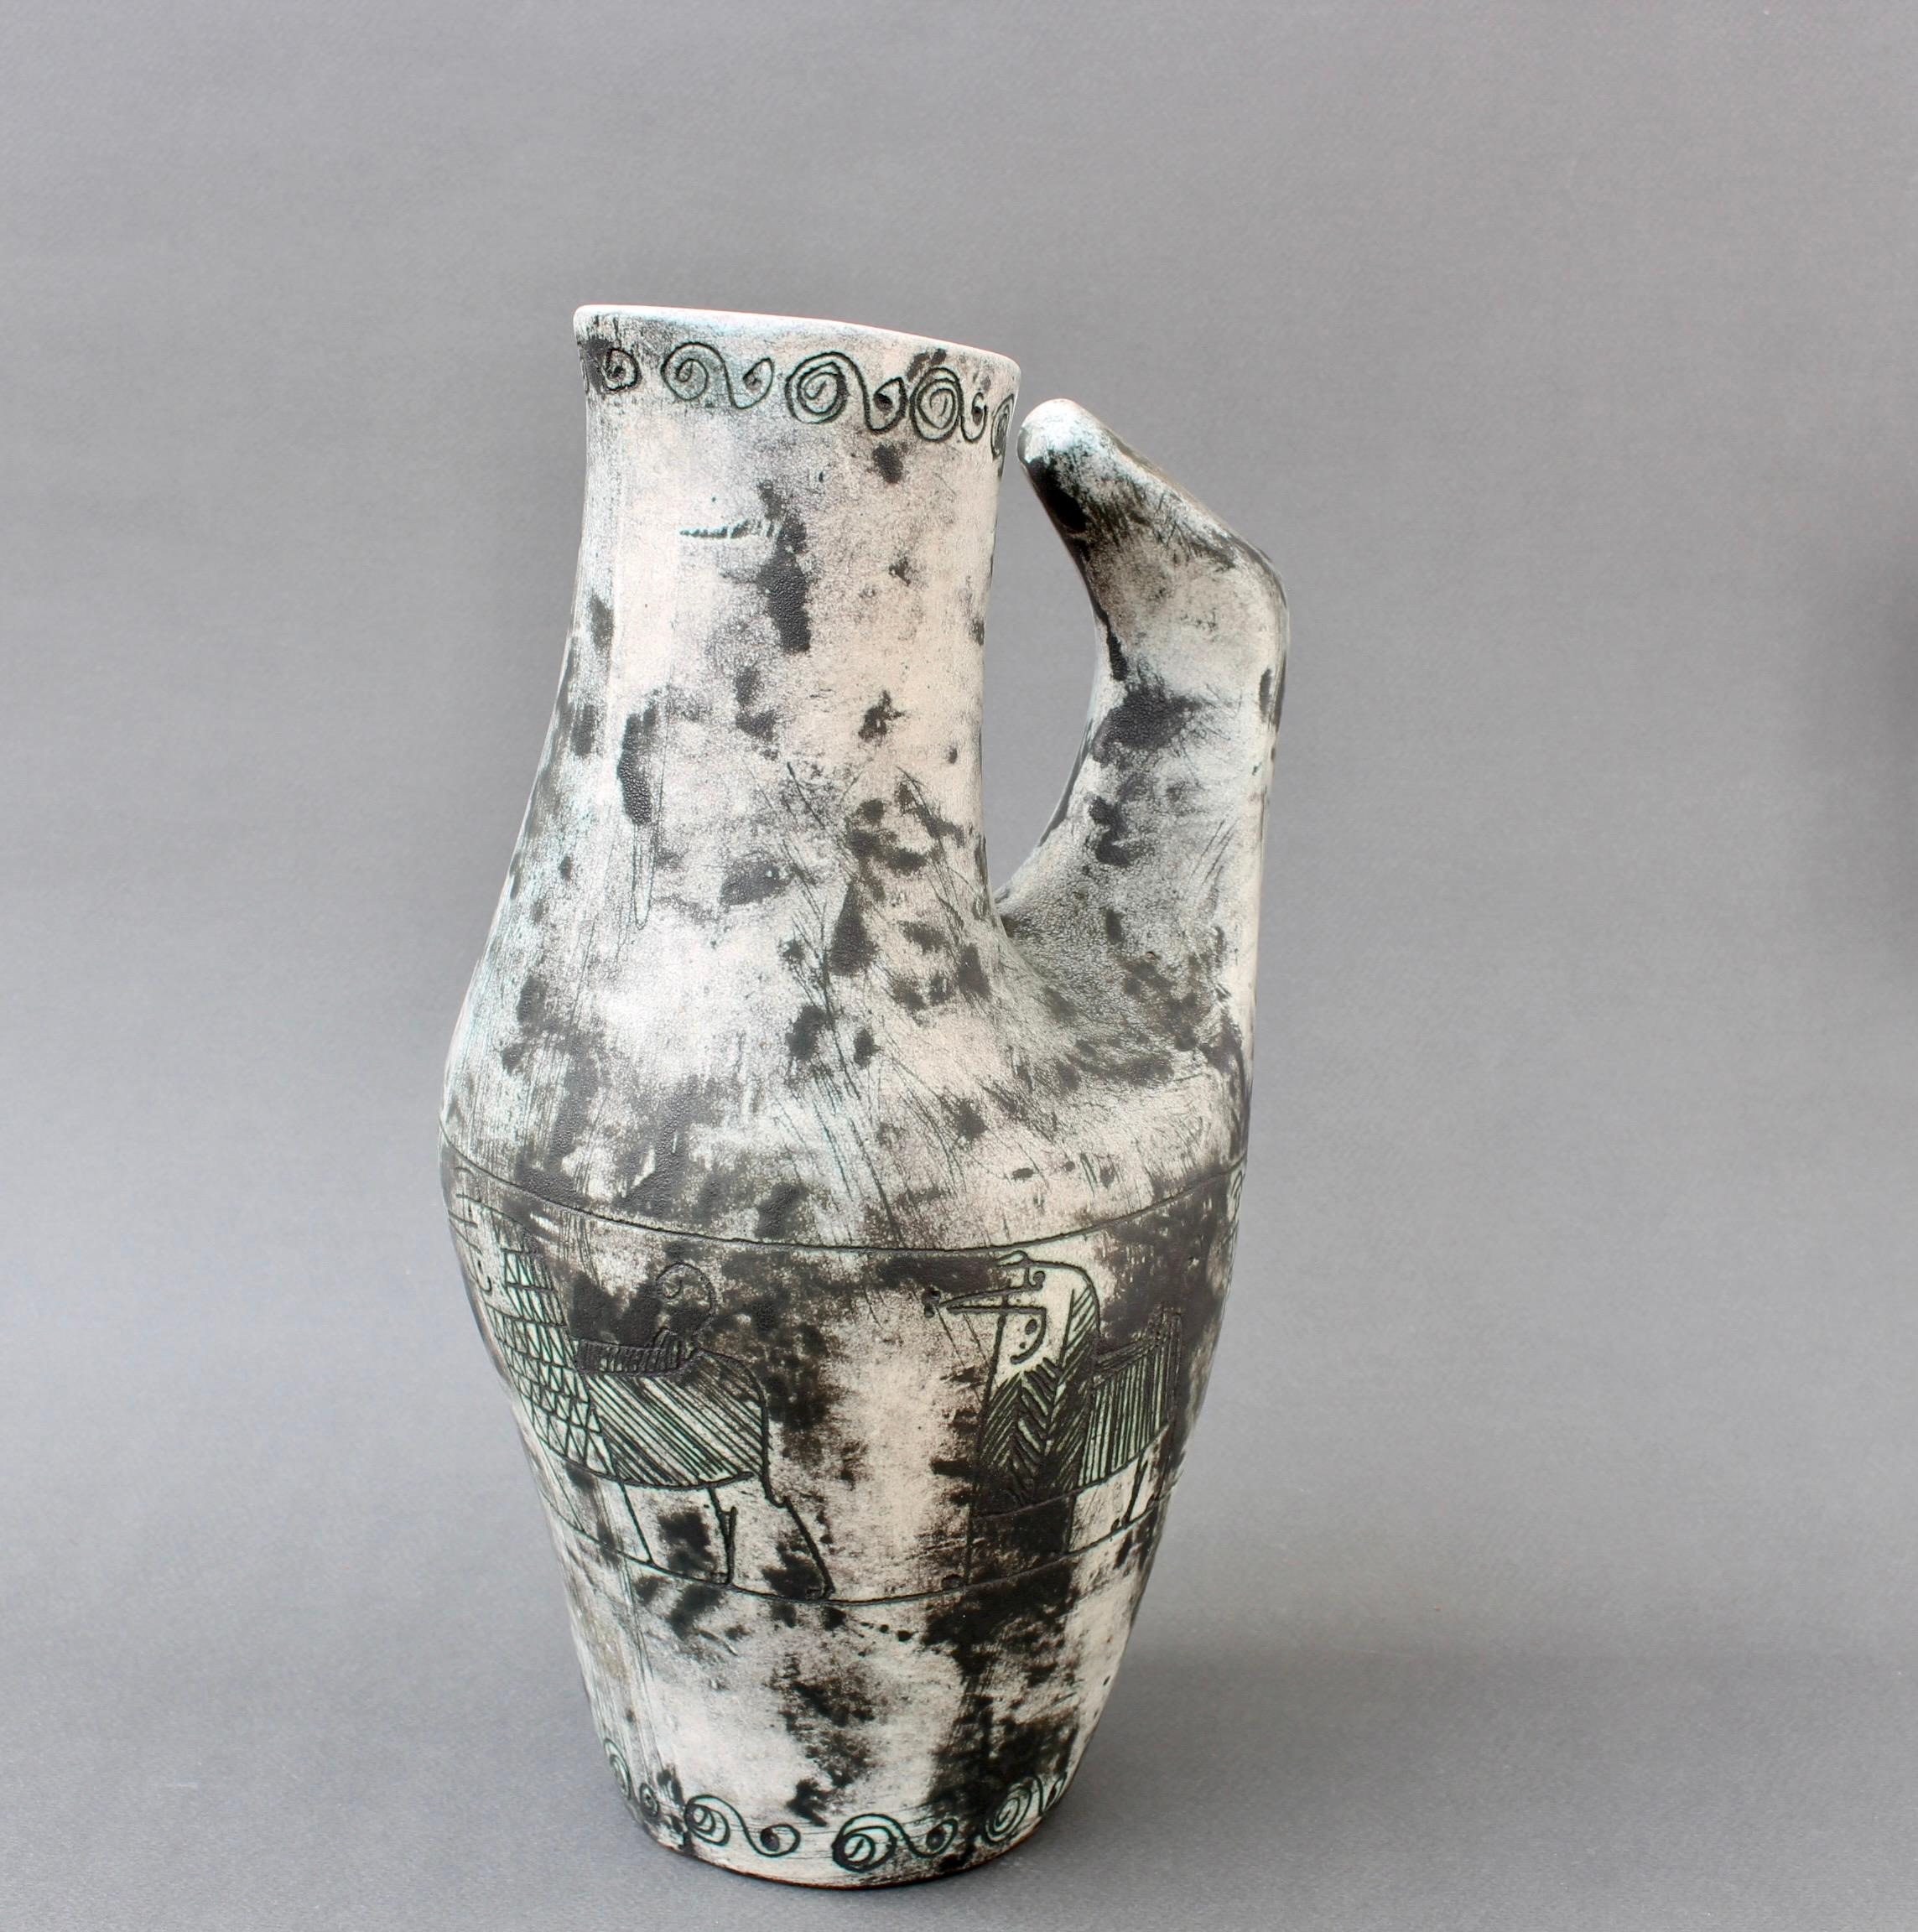 Pichet / vase vintage en céramique française (circa 1950s) par Jacques Blin. Le pichet, qui a peut-être la forme d'un fier coq français, est dans une teinte subtile recouverte de la glaçure brumeuse caractéristique de Blin. Il est décoré d'une frise